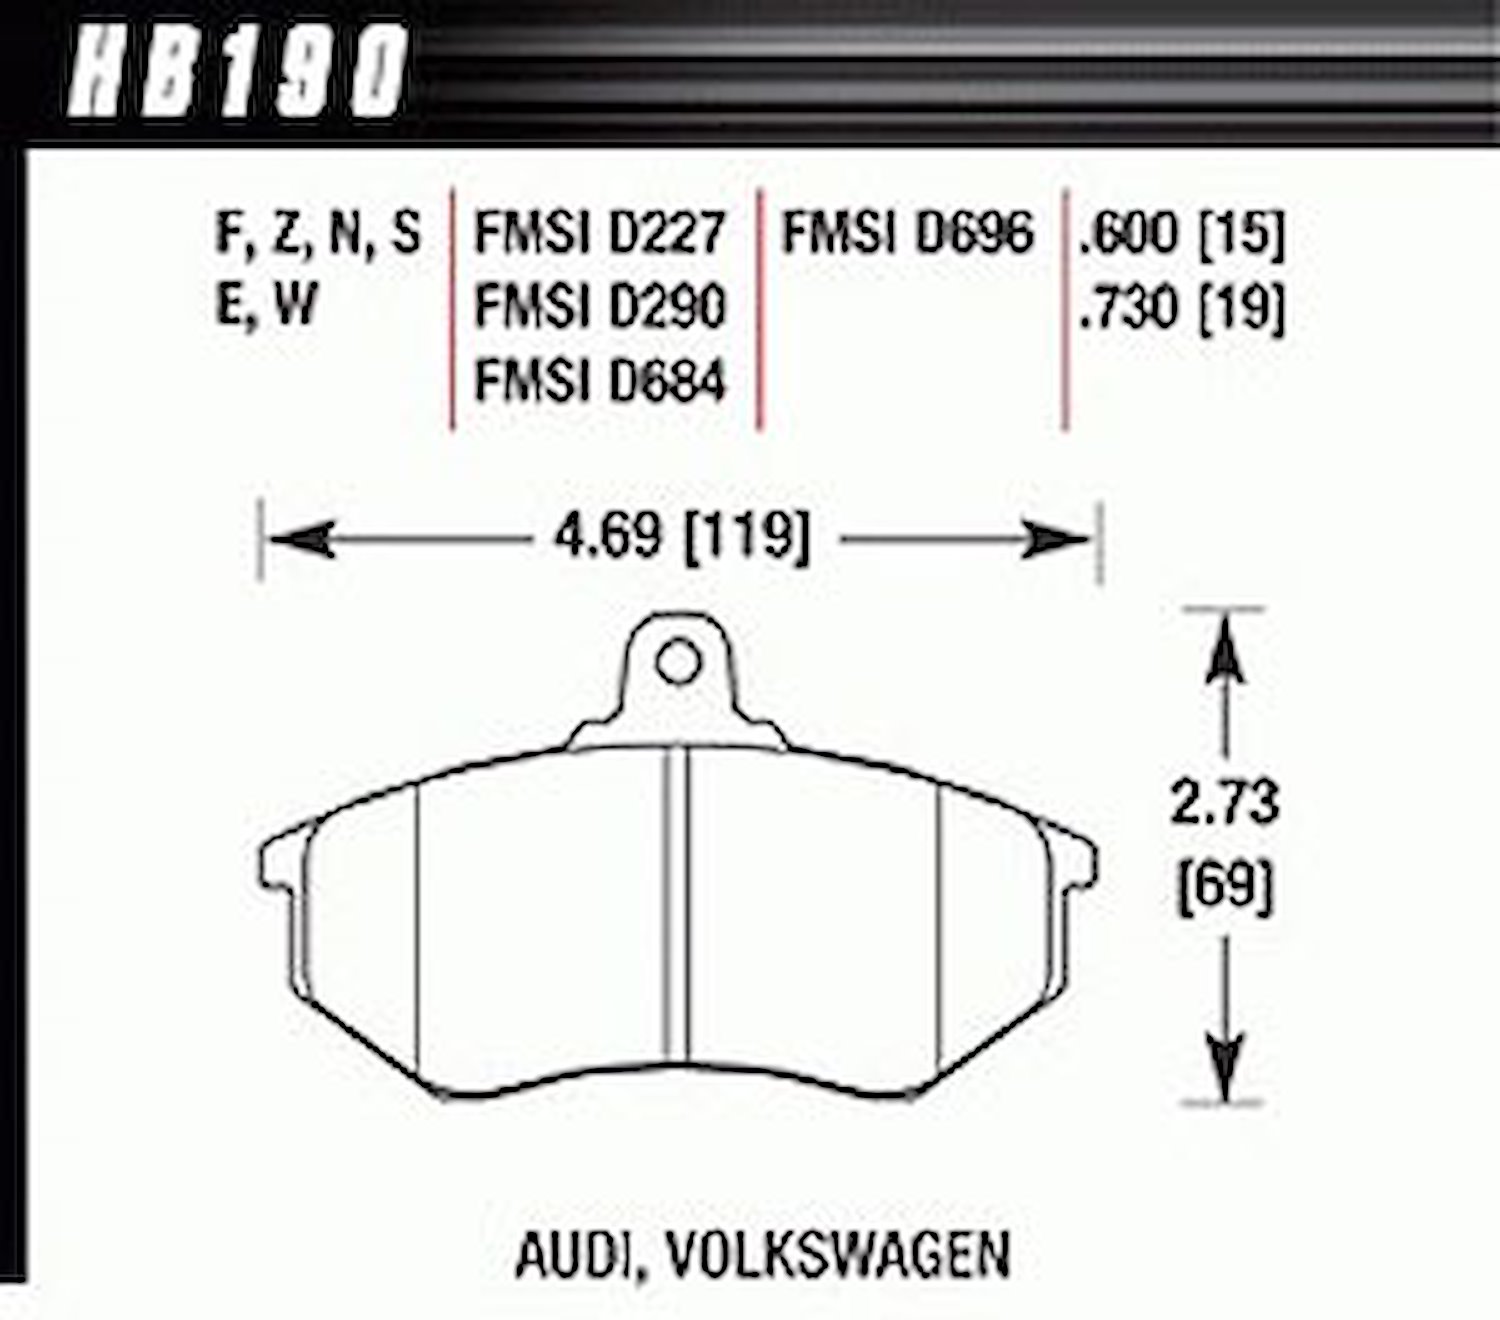 HT-10 PADS Audi Volkswagen